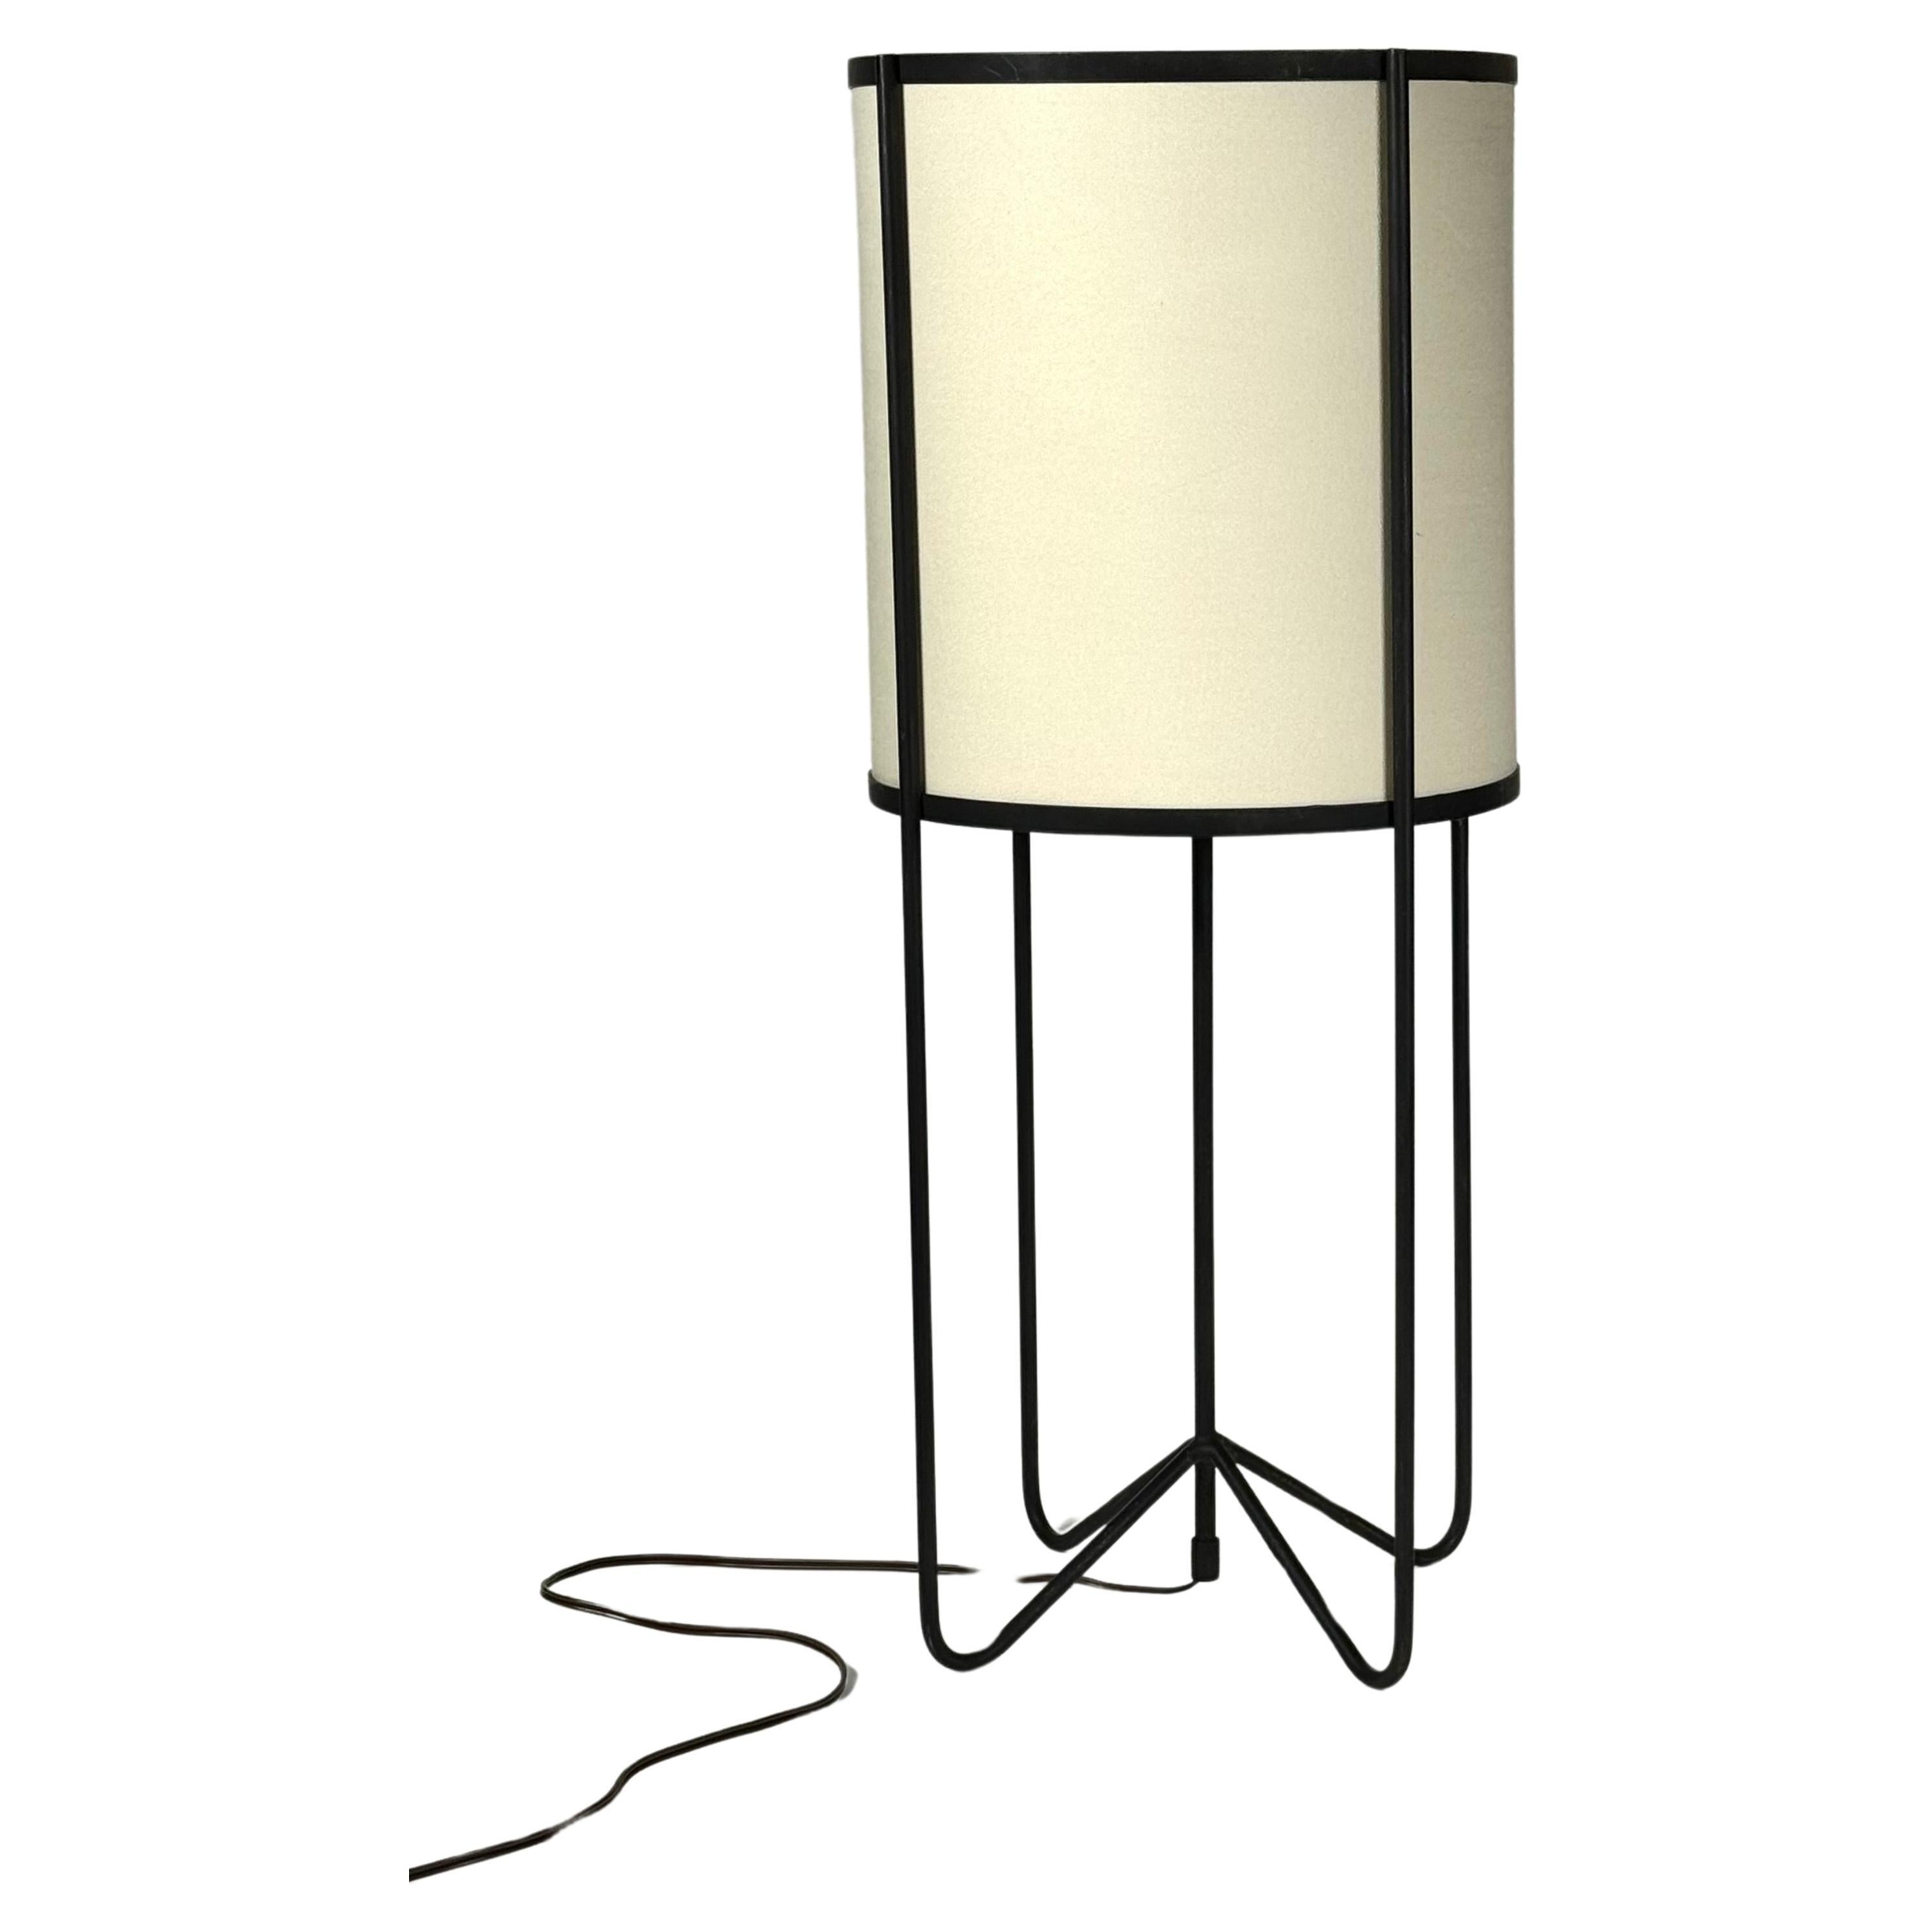 California Design Wrought Iron & Linen Table Lamp Circa 1950s #1